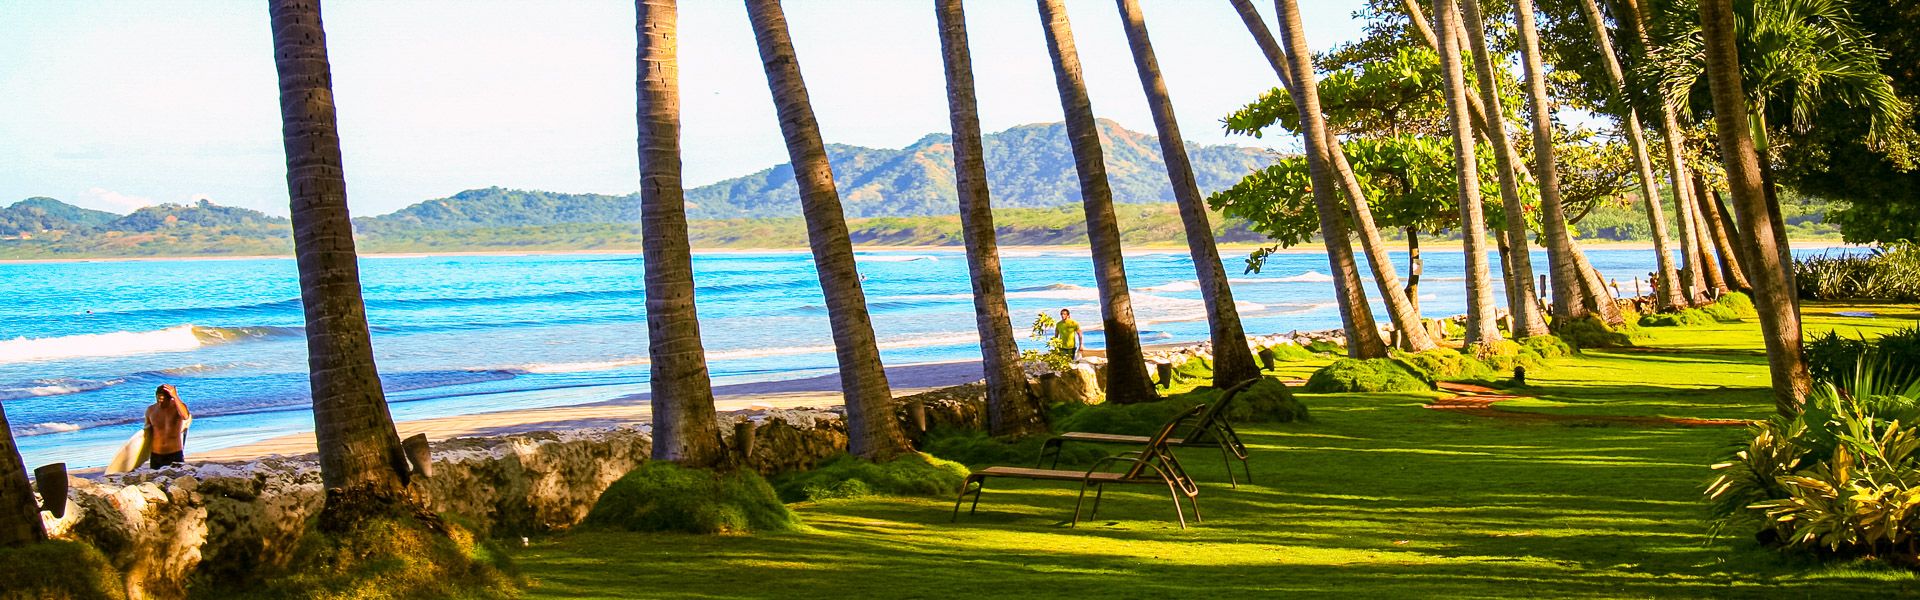 Tamarindo Diria Beach & Golf Resort |  Tamarindo Diria Beach Resort / Chamleon